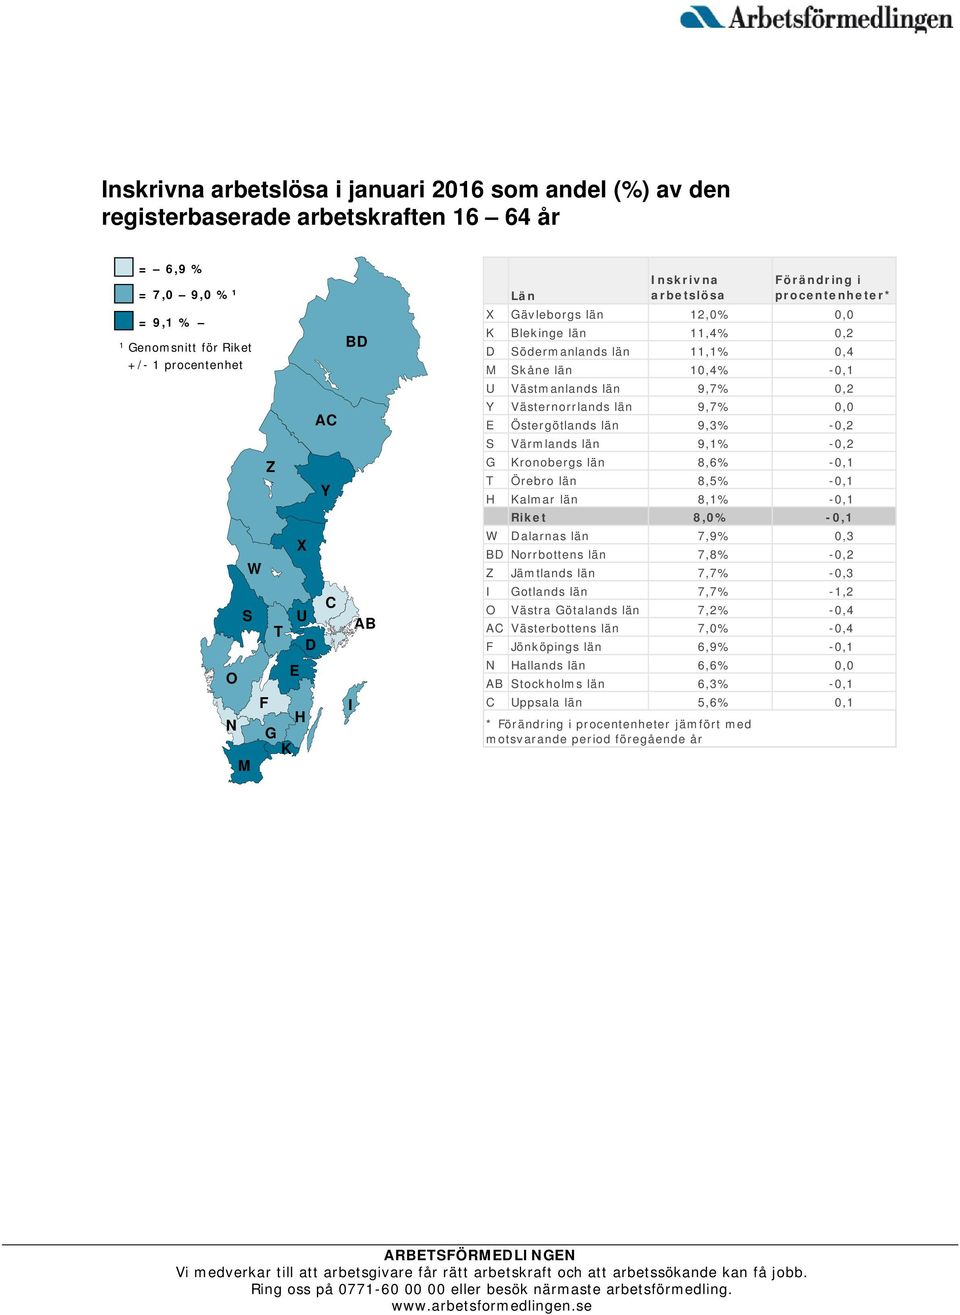 0,2 Y Västernorrlands län 9,7% 0,0 E Östergötlands län 9,3% -0,2 S Värmlands län 9,1% -0,2 G Kronobergs län 8,6% -0,1 T Örebro län 8,5% -0,1 H Kalmar län 8,1% -0,1 Riket 8,0% -0,1 W Dalarnas län 7,9%